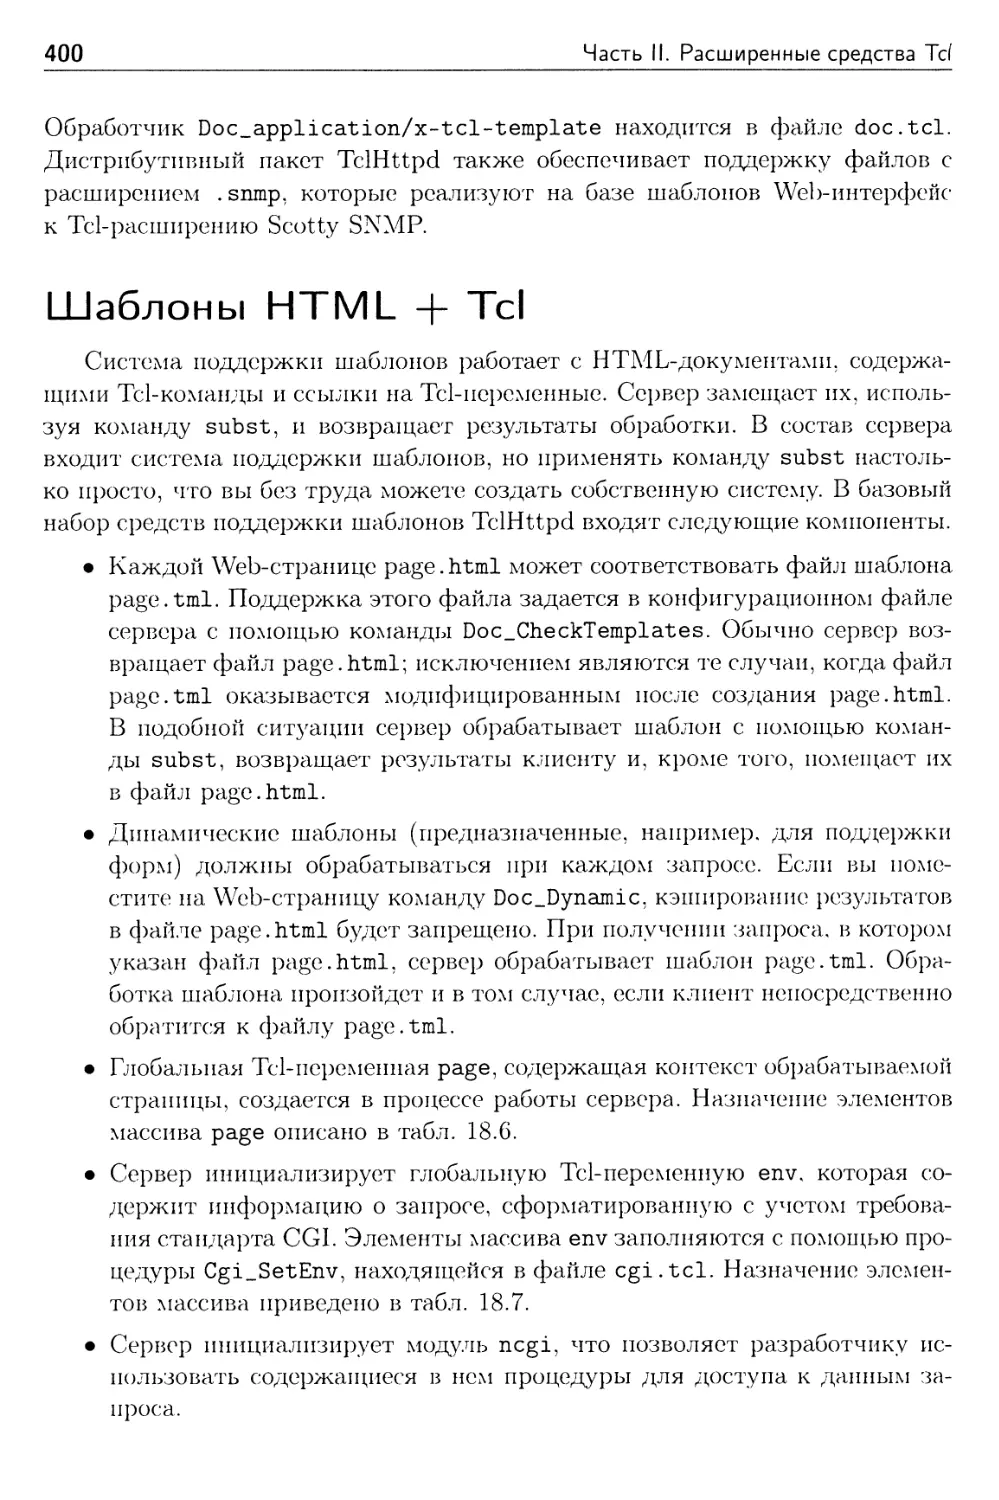 Шаблоны HTML + Tcl